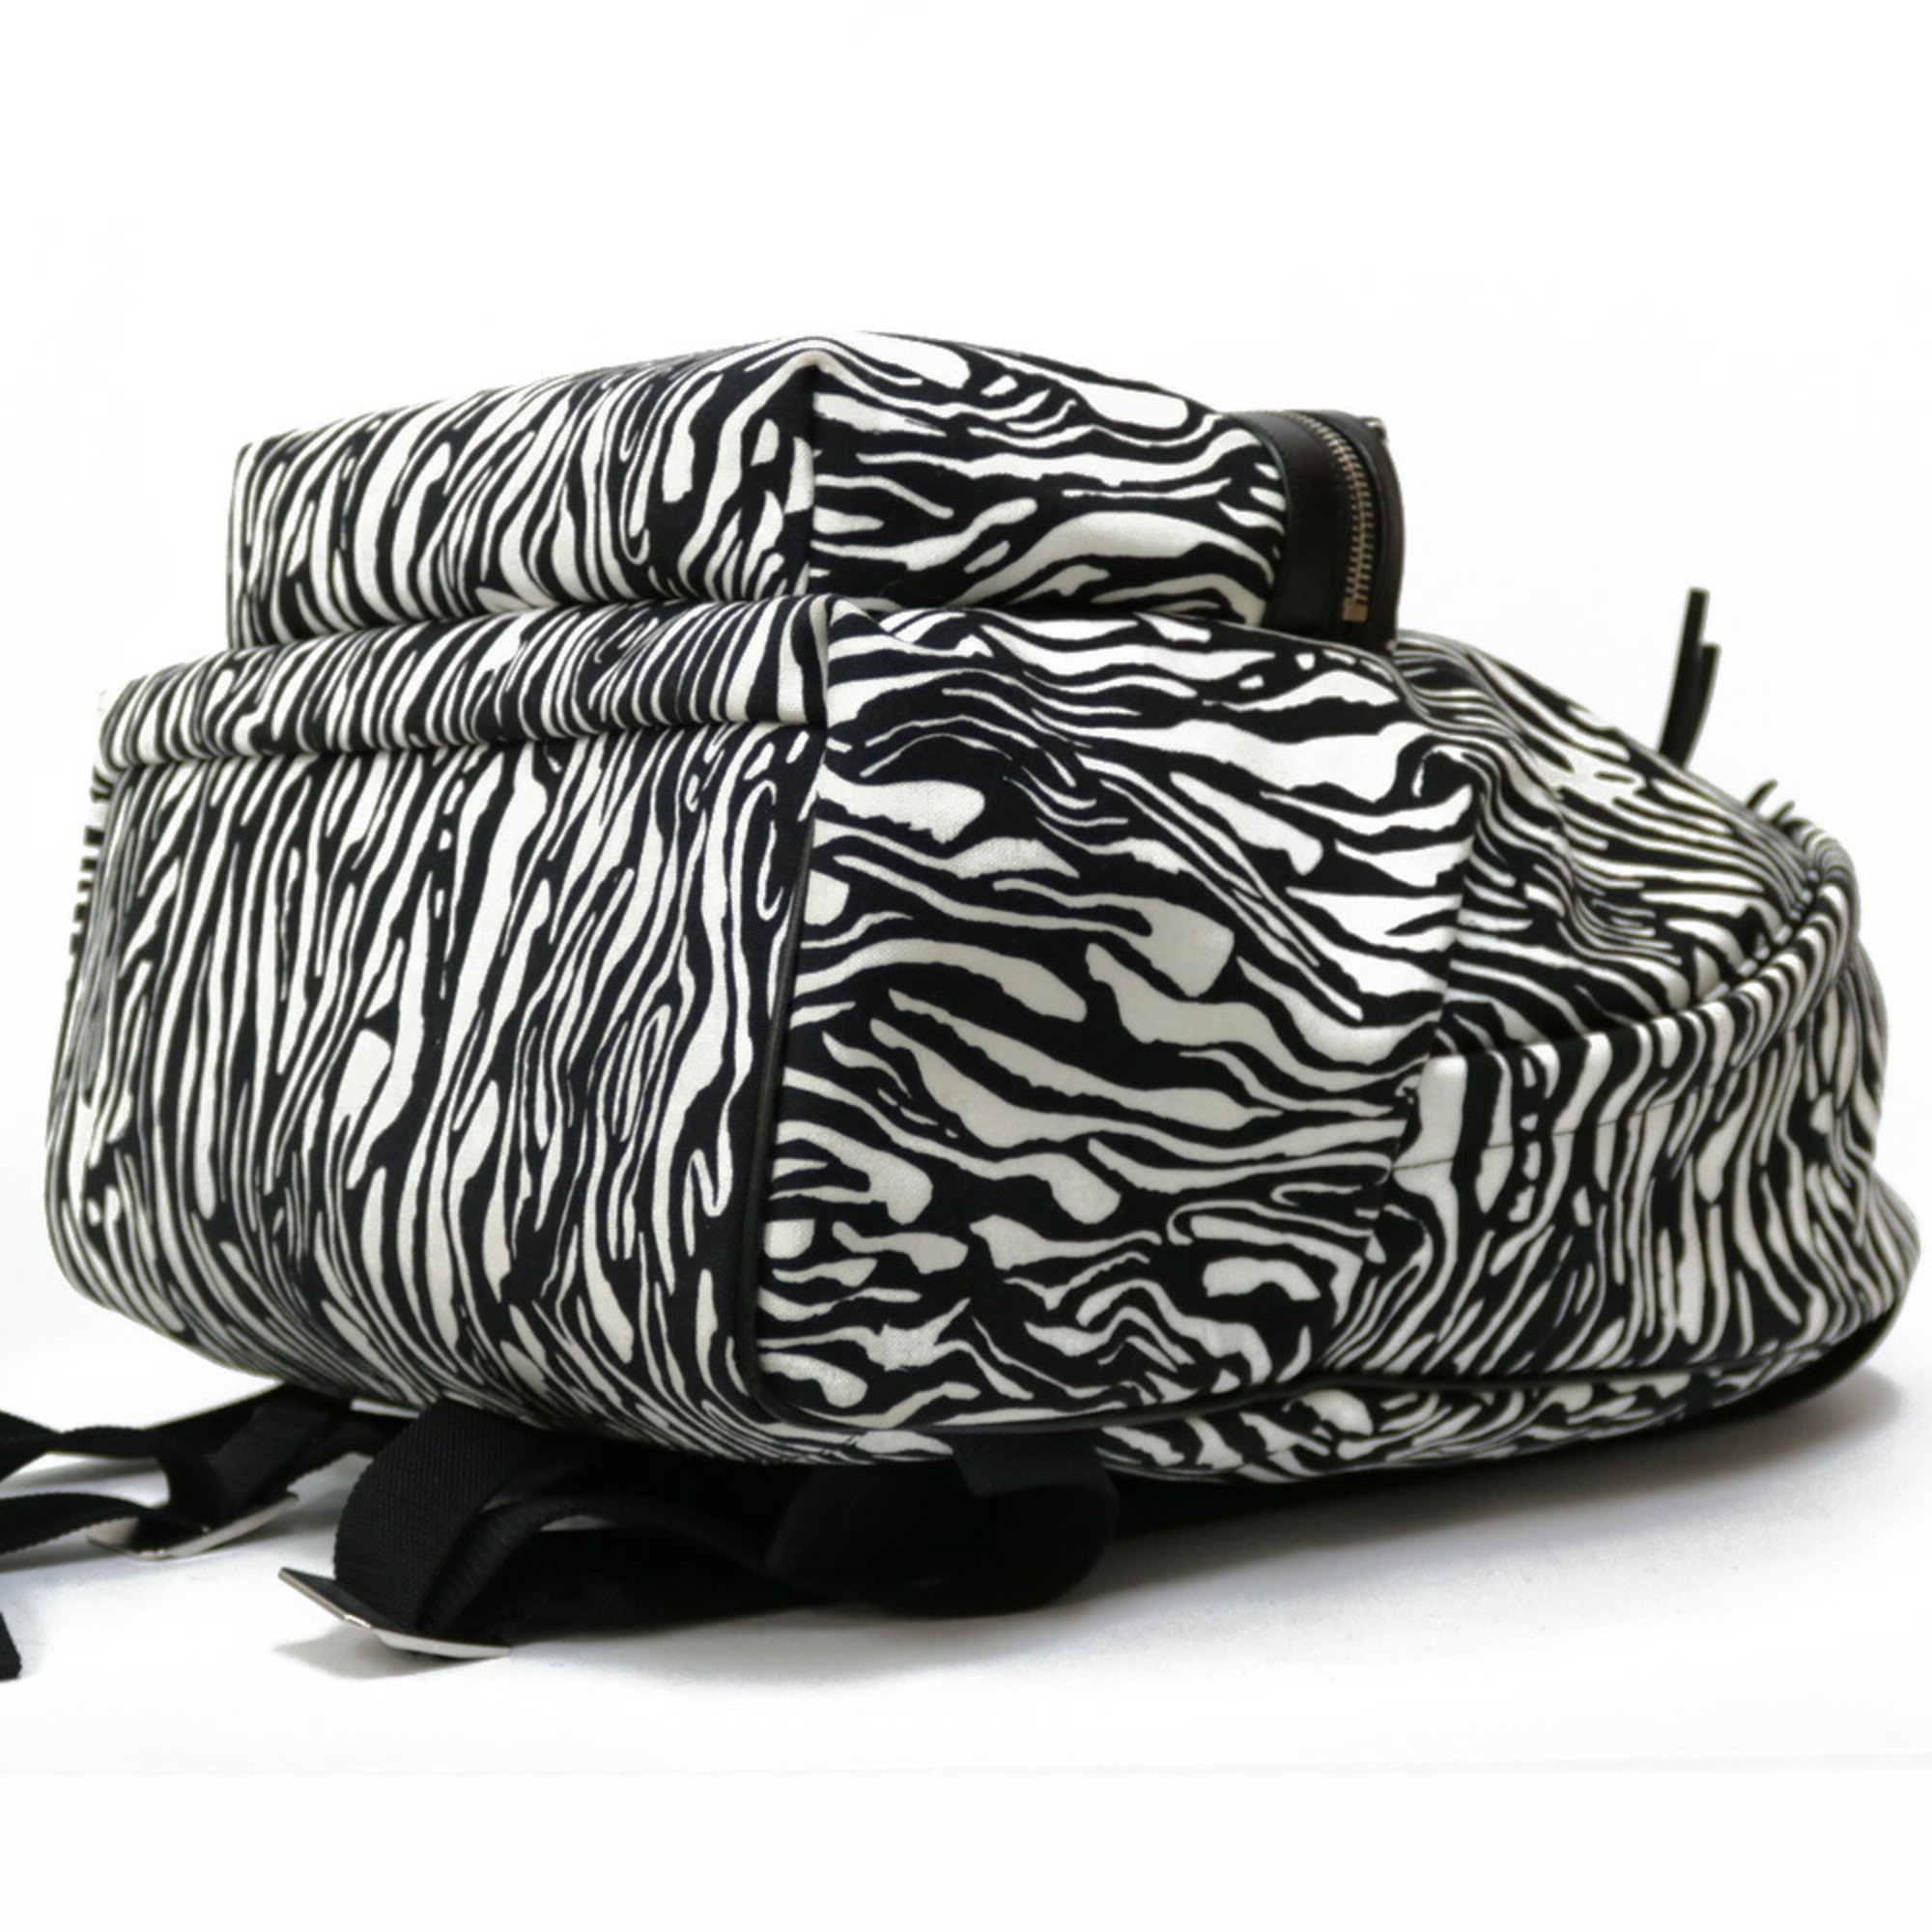 Saint Laurent Backpack/Daypack Canvas Women's SAINT LAURENT Zebra Pattern